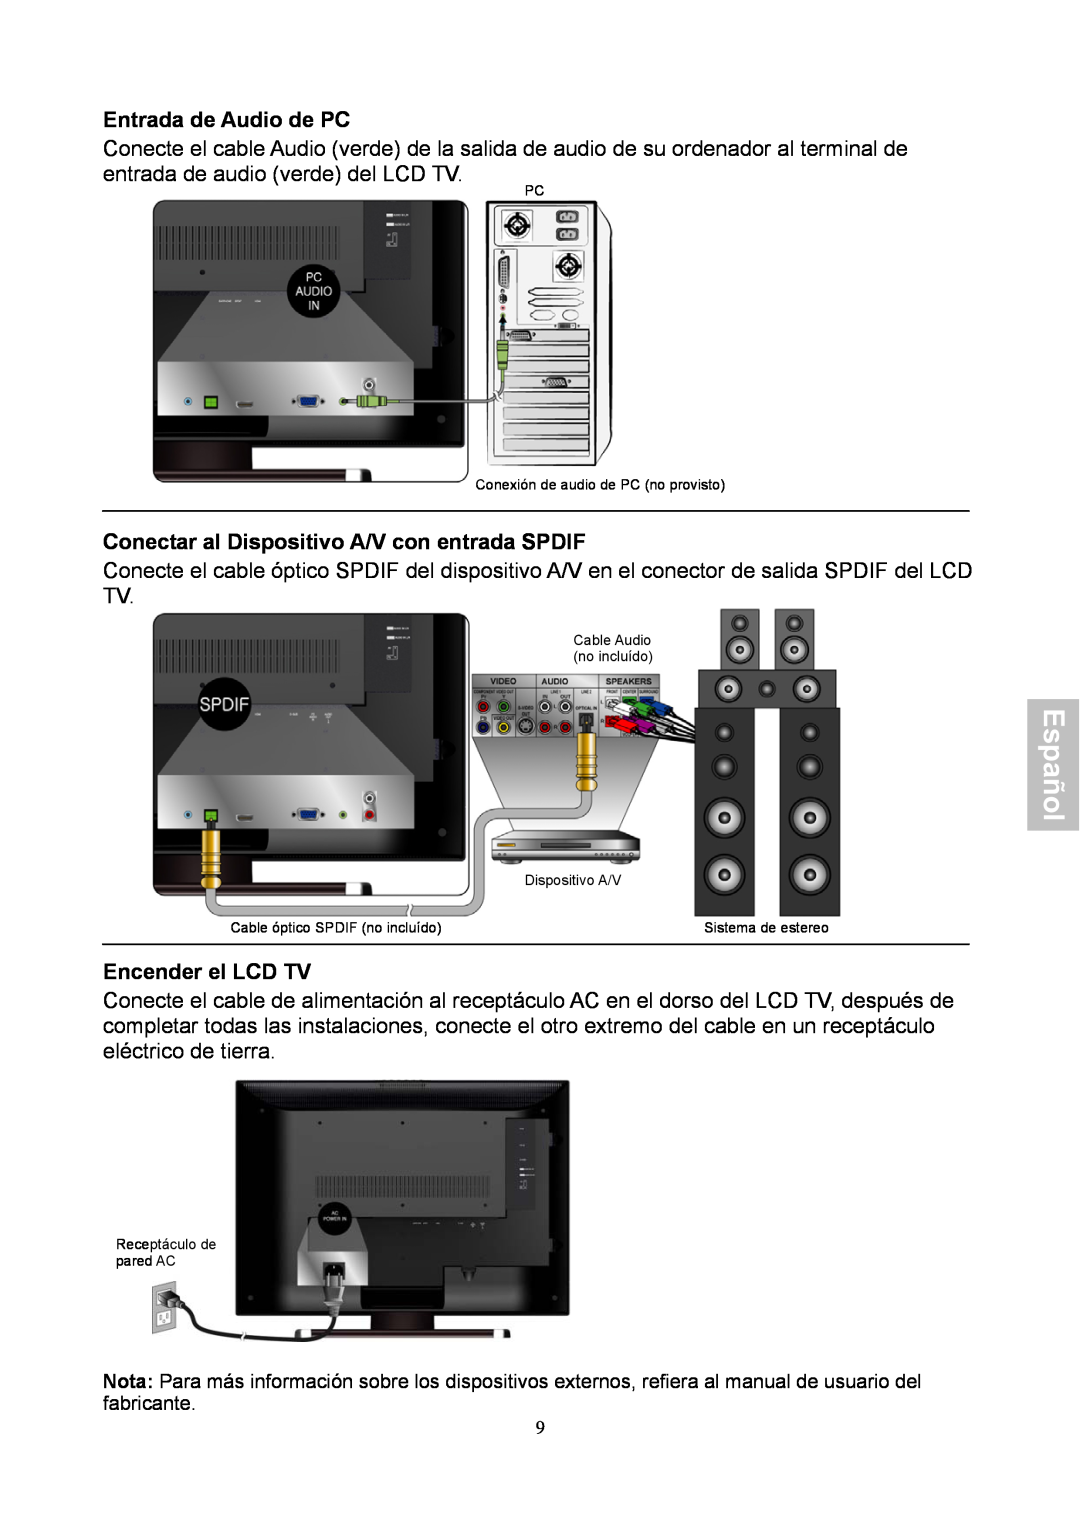 HANNspree XV Series 32 Entrada de Audio de PC, Conectar al Dispositivo A/V con entrada SPDIF, Encender el LCD TV, Español 